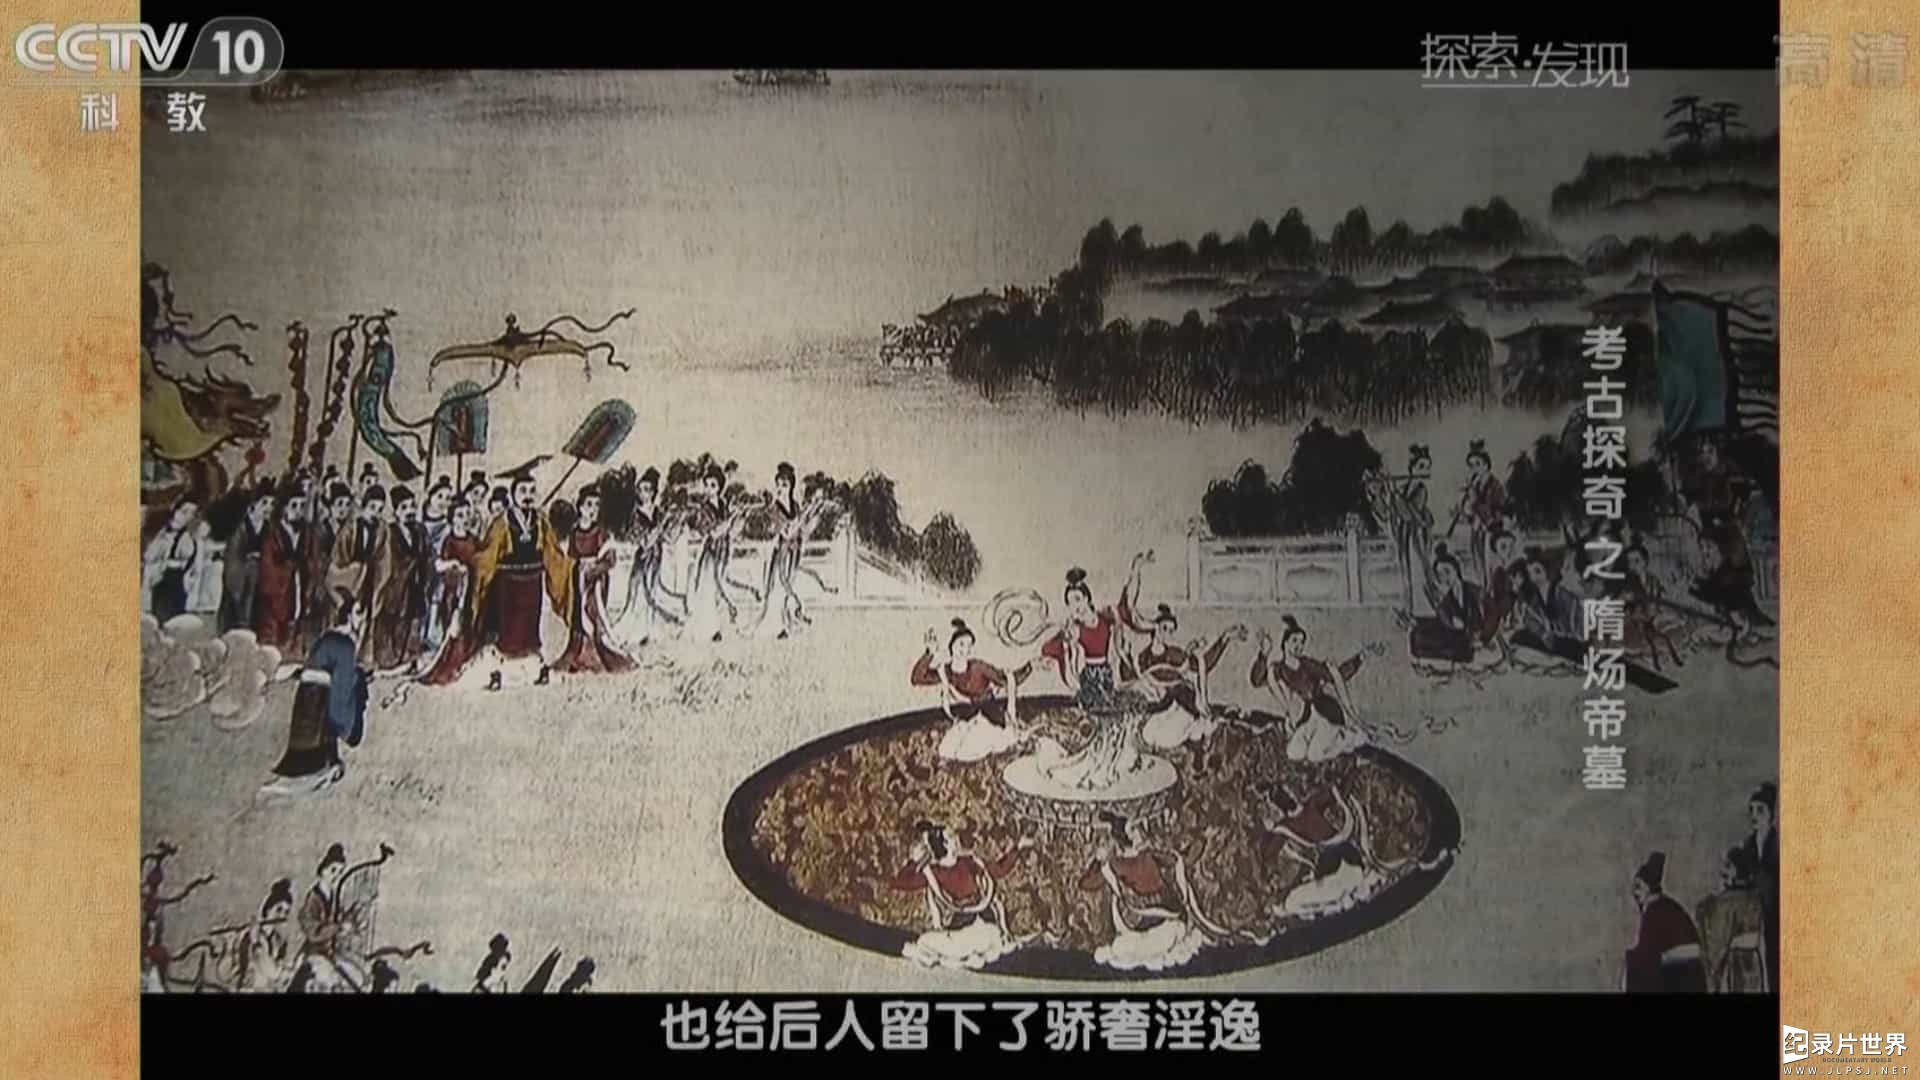 央视纪录片/中国考古纪录片《探索发现 考古探奇 隋炀帝（萧后合葬）之墓》